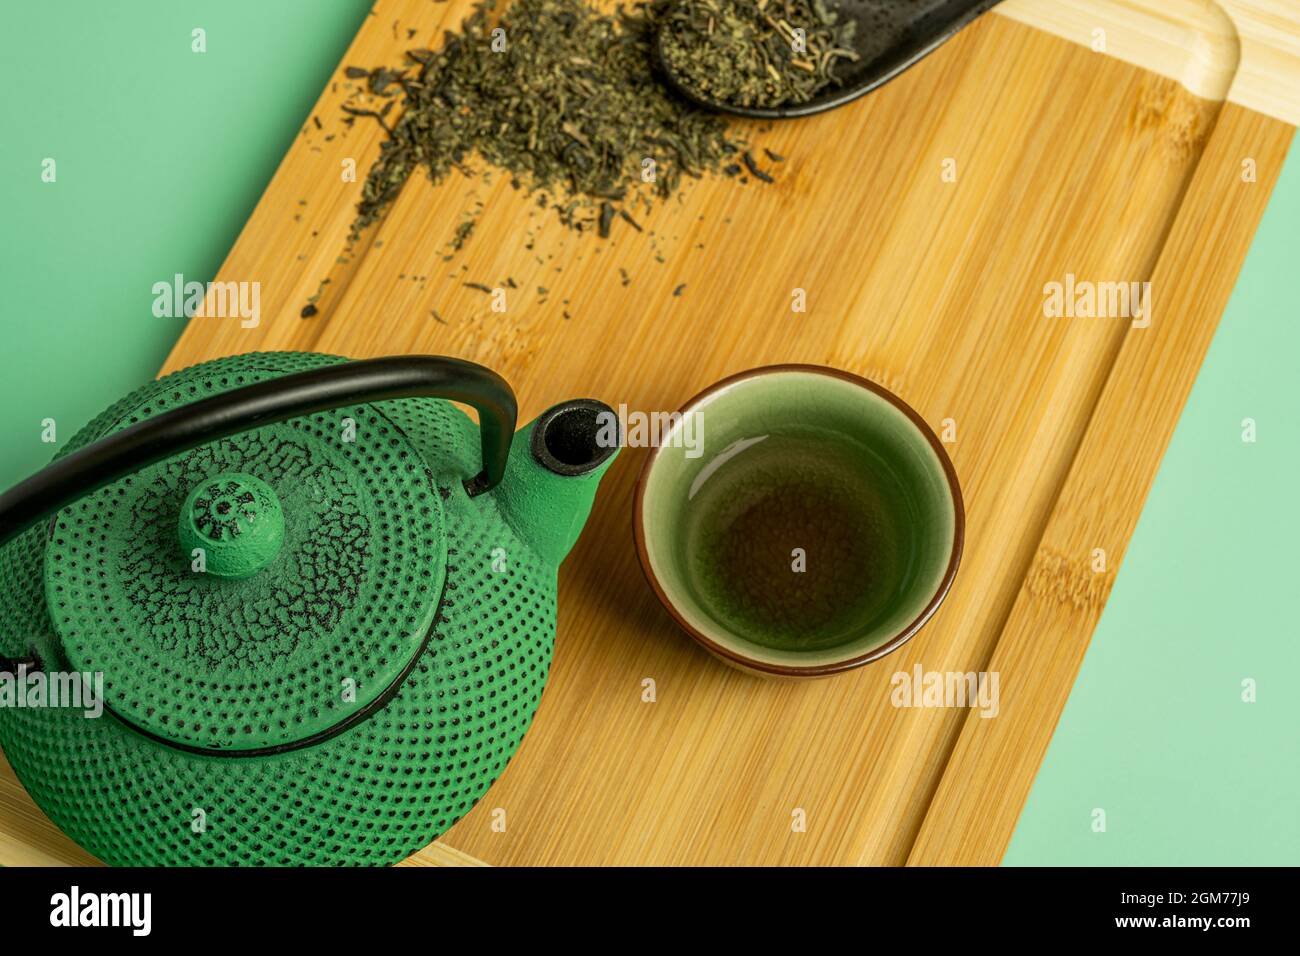 Grüne Teekannen aus Gusseisen, von oben betrachtet, begleitet von einer  kleinen Tasse traditionellen Tees und einem schwarzen Porzellanlöffel mit  dehydriertem Tee Stockfotografie - Alamy